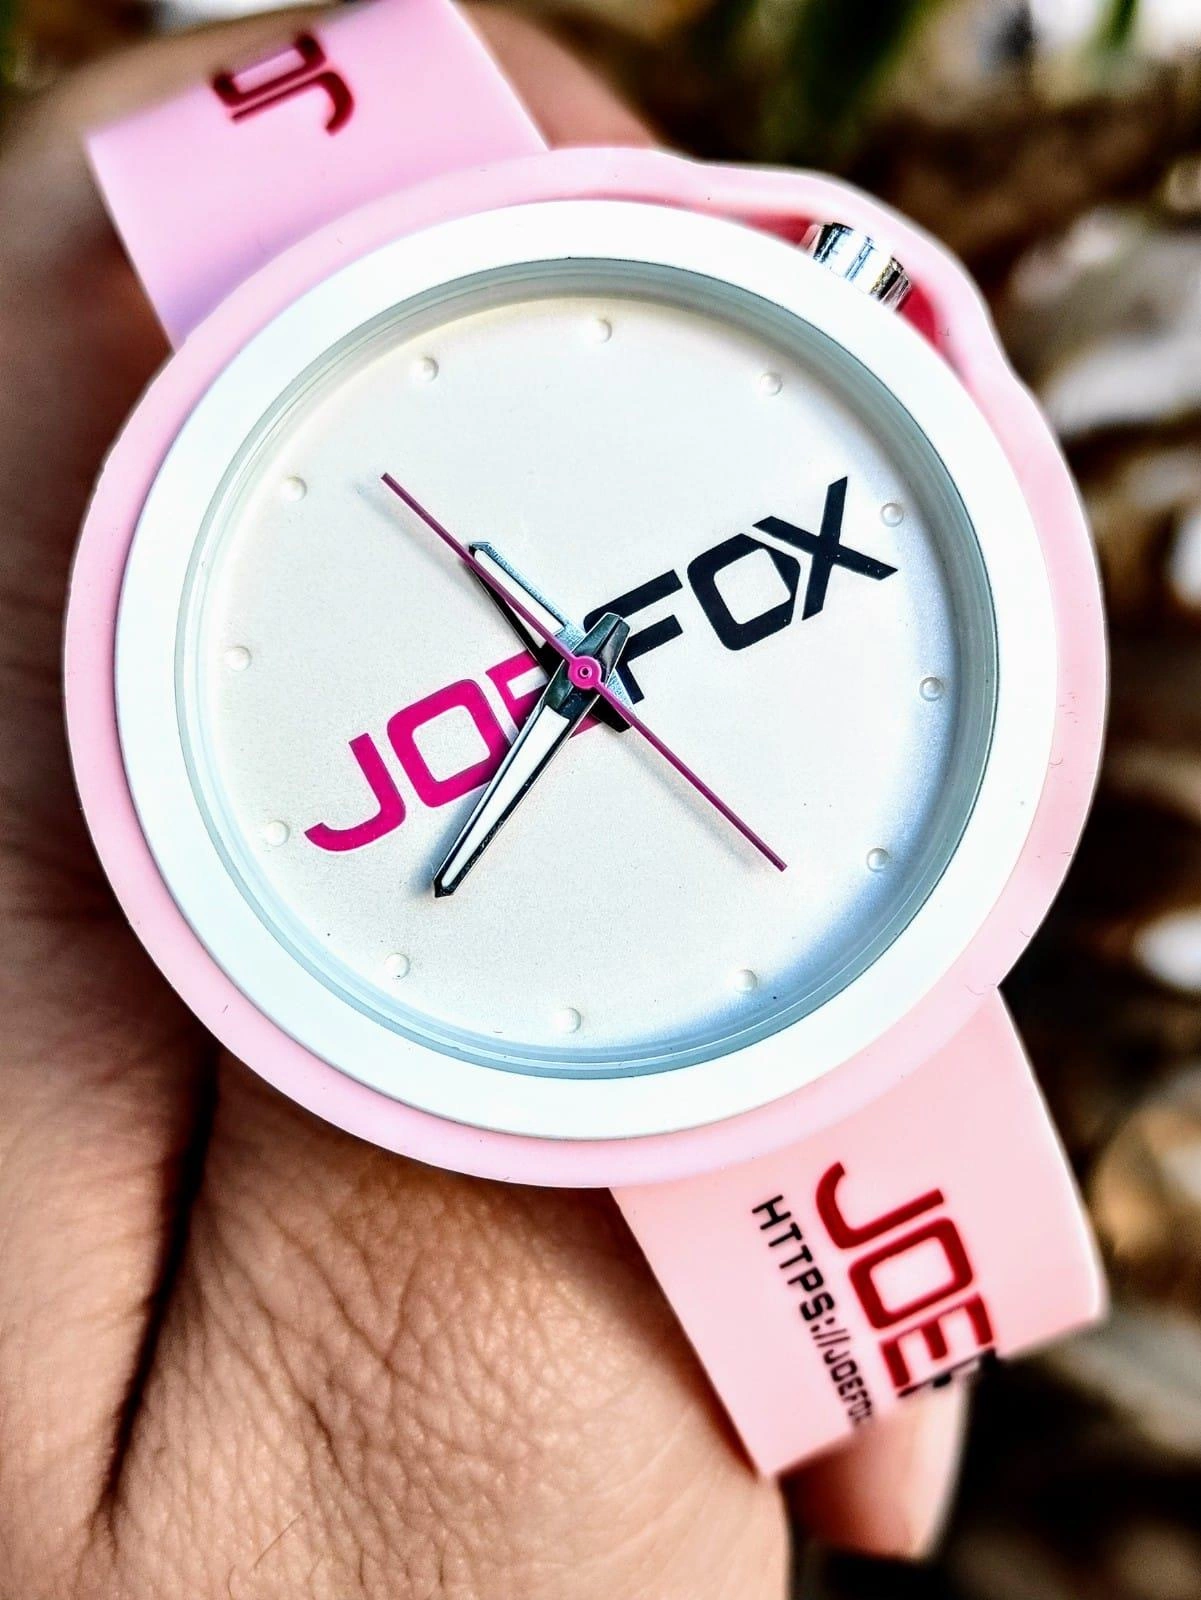 Joefox Analog Unisex Elite Exclusive Tasarım Kol Saati JOE-112-A